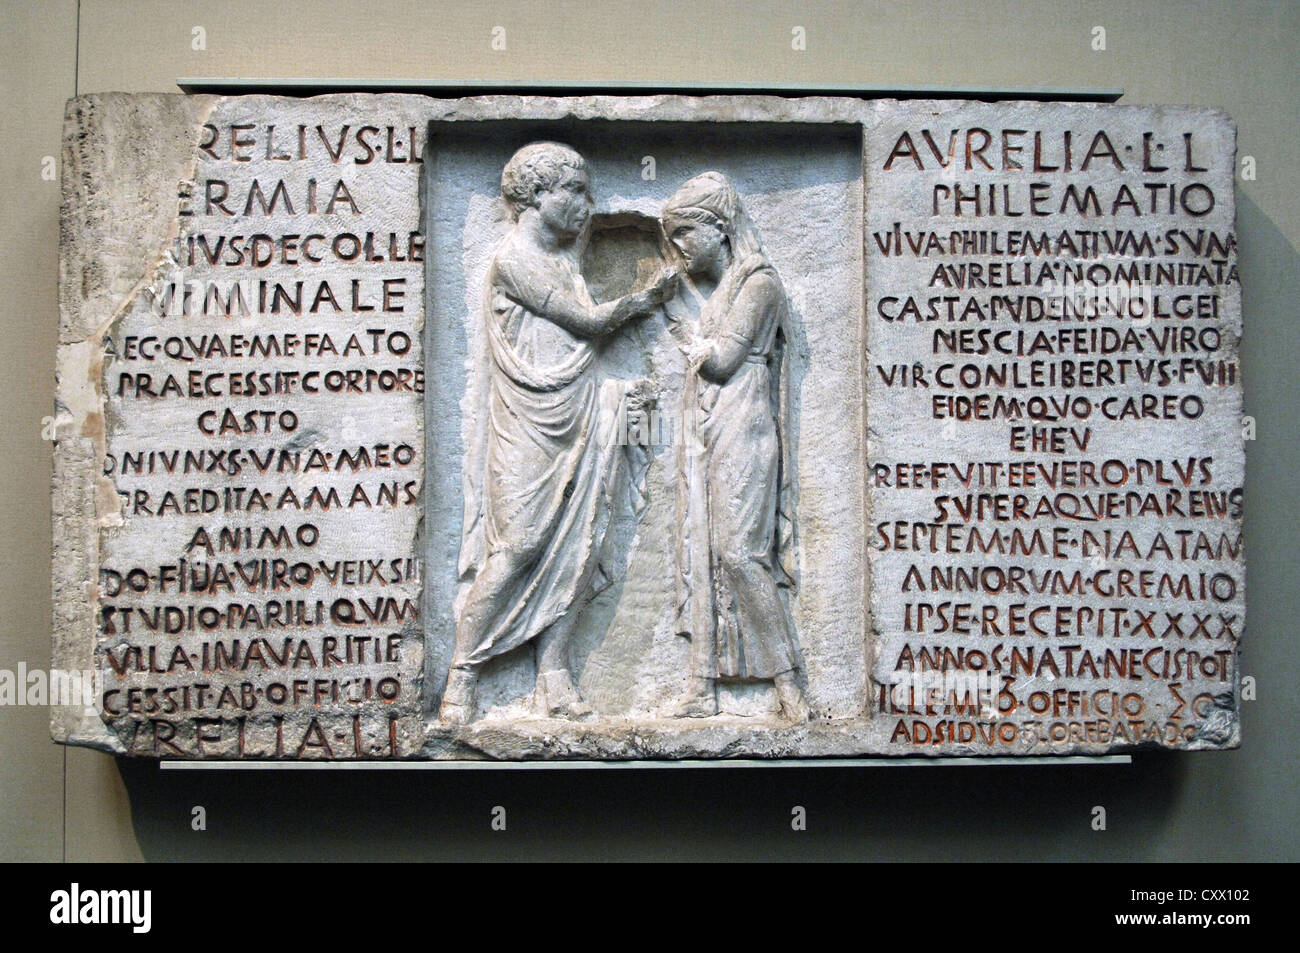 Inscrito funerario de socorro Aurelius Hermia y su esposa Aurelia Philematium. 80 BC. De una tumba en la Via Nomentana, Roma. Foto de stock